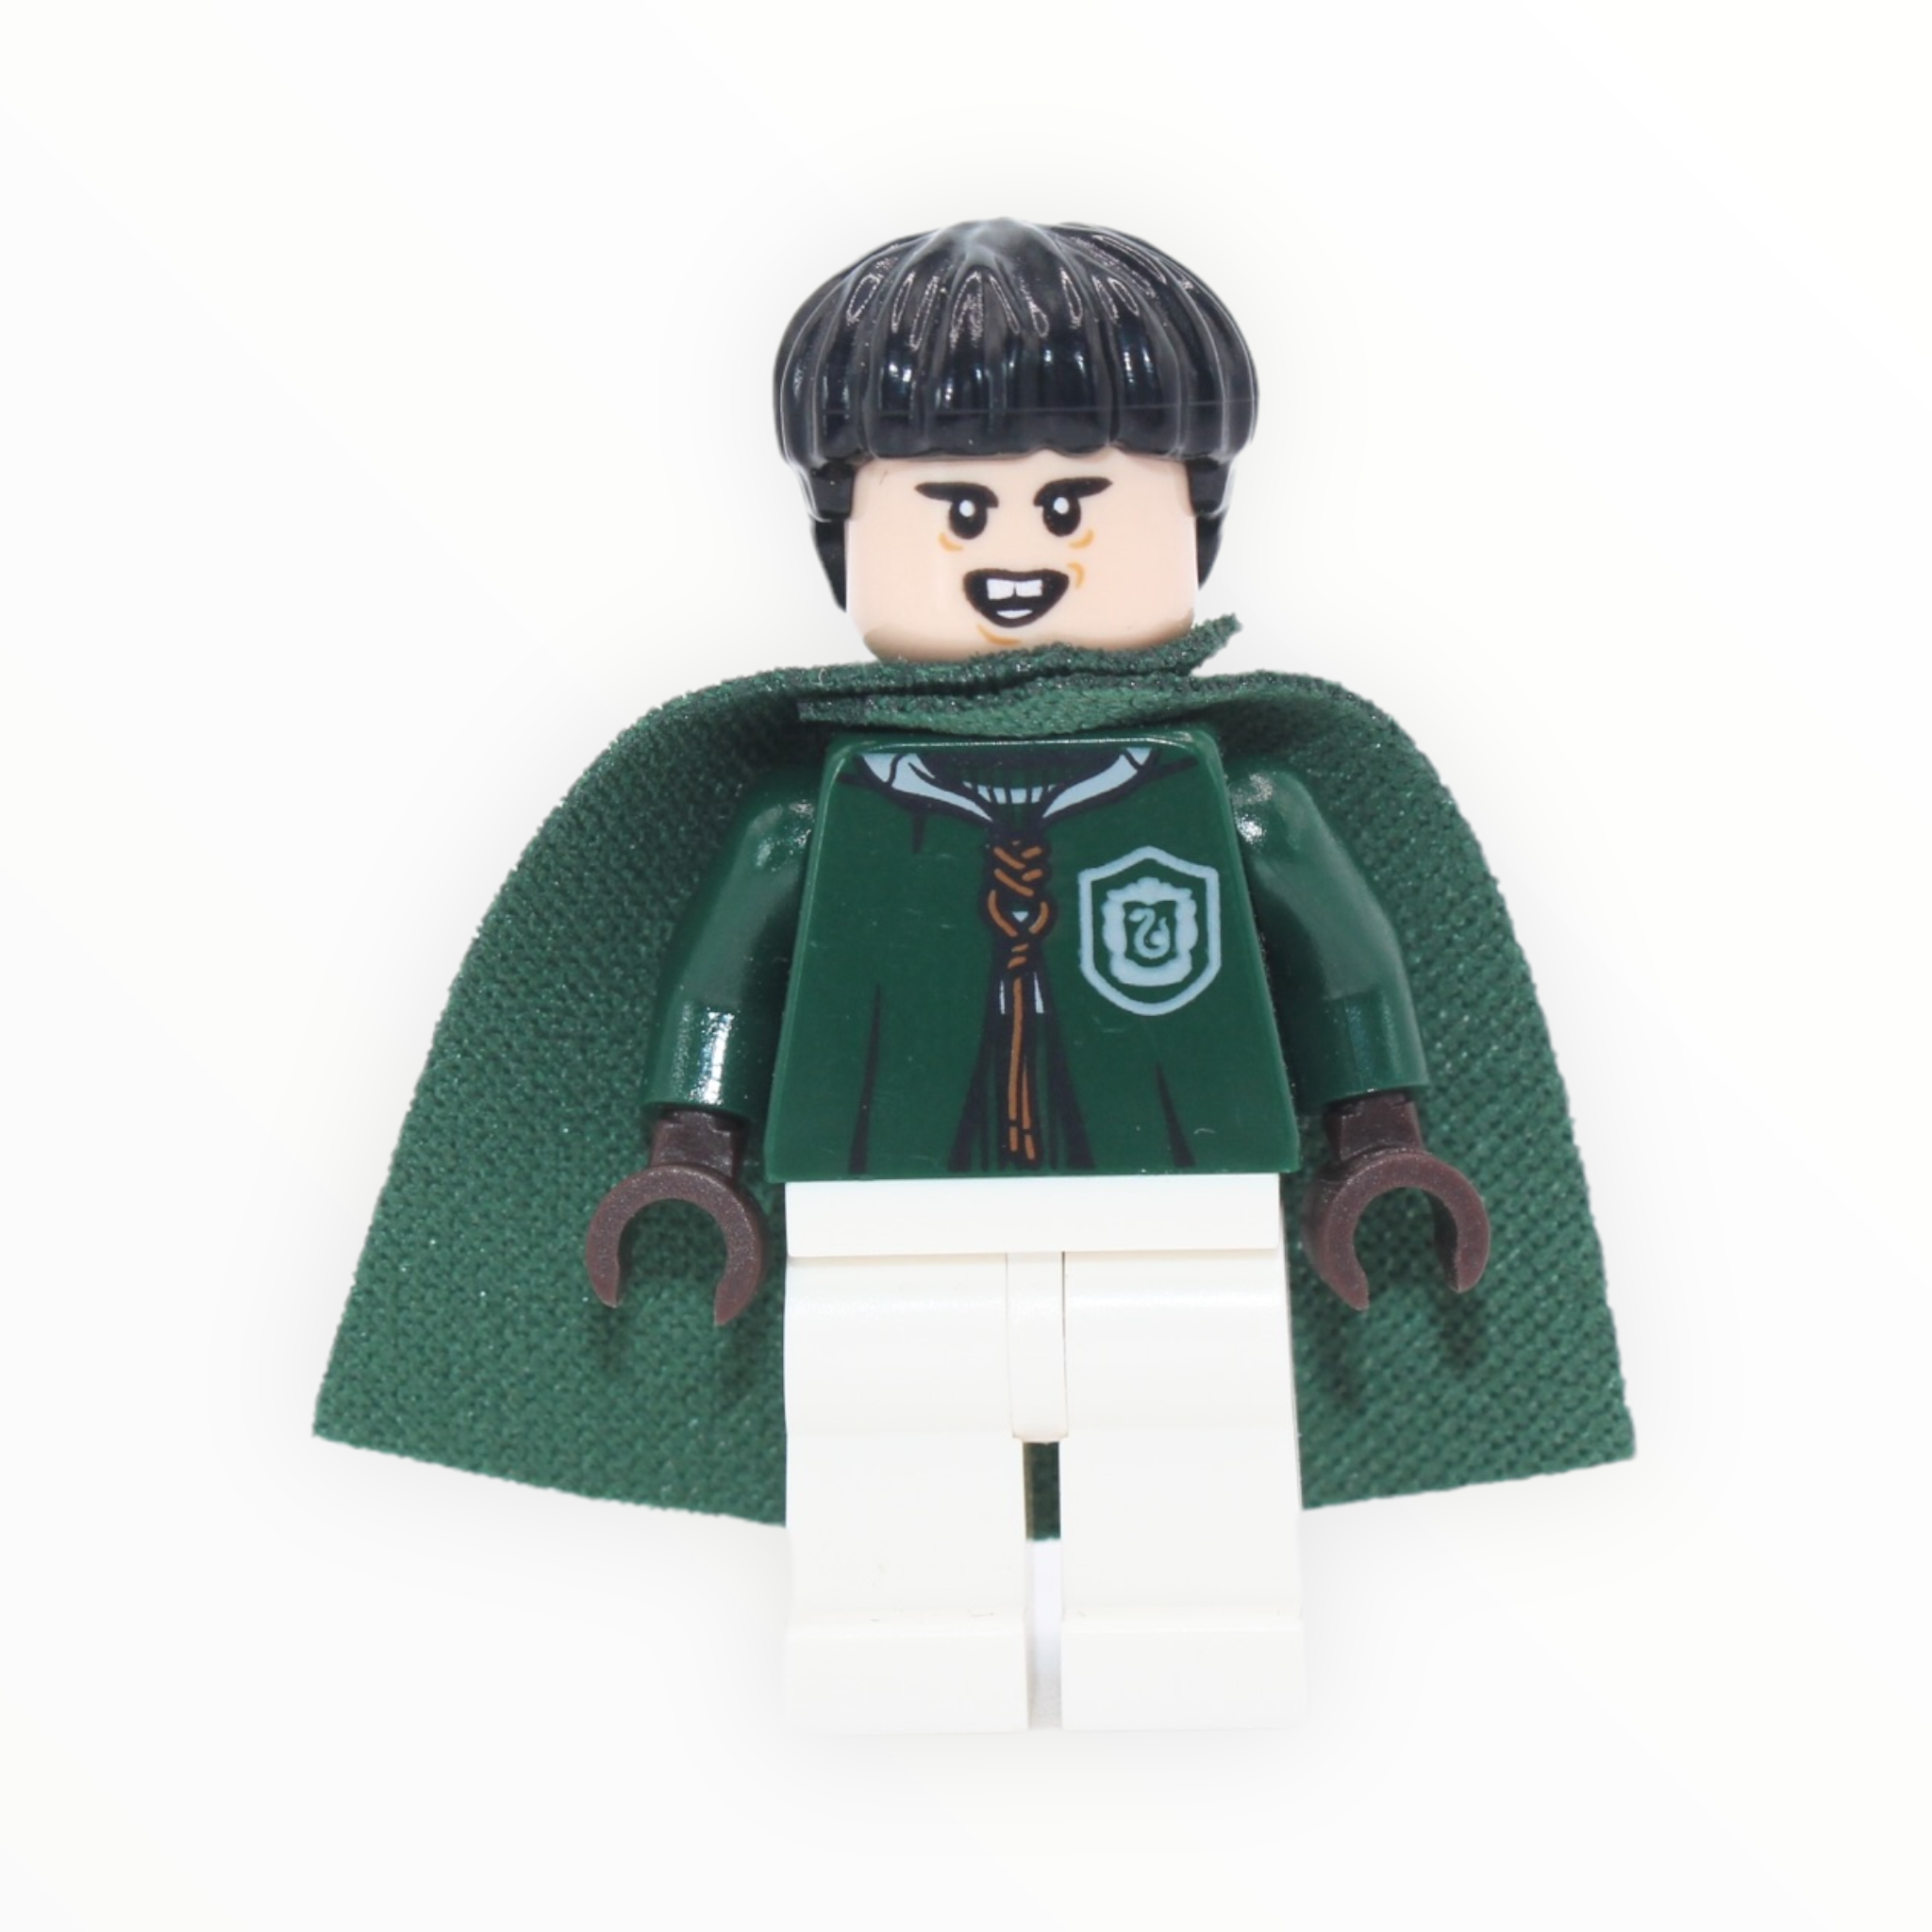 Marcus Flint (Quidditch uniform, spongy cape, 2018)